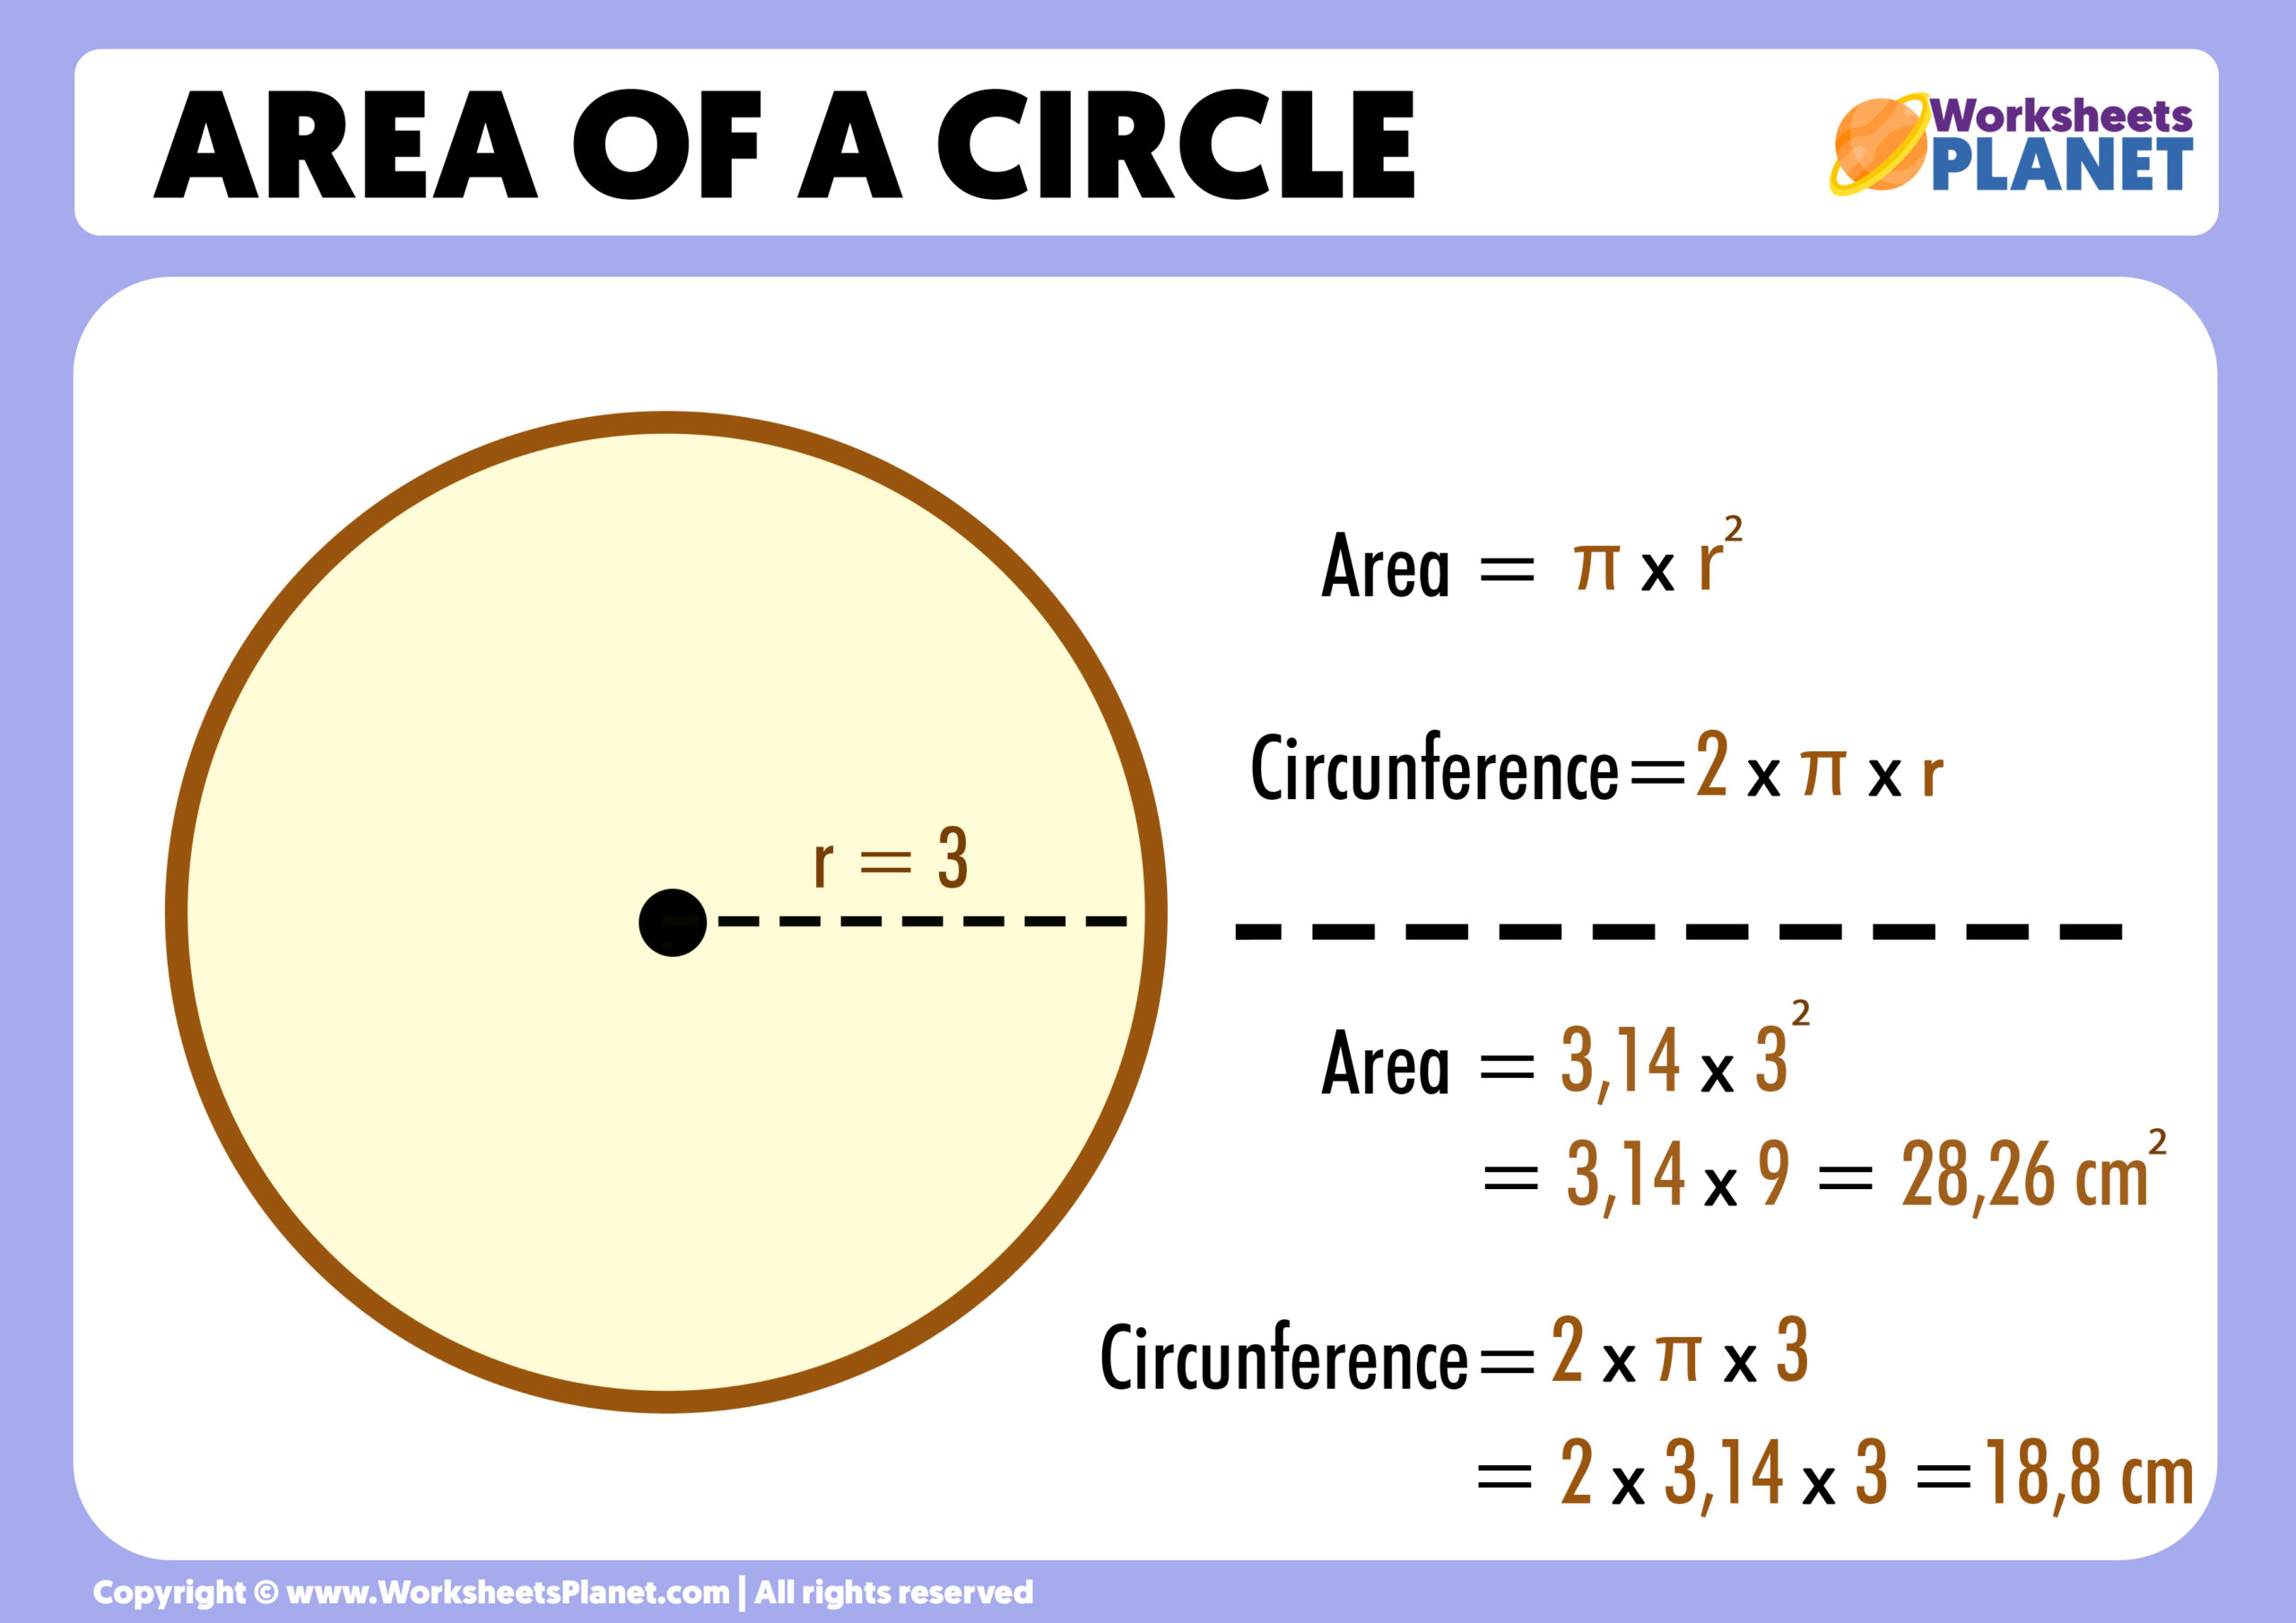 Cuál es el área de la circunferencia